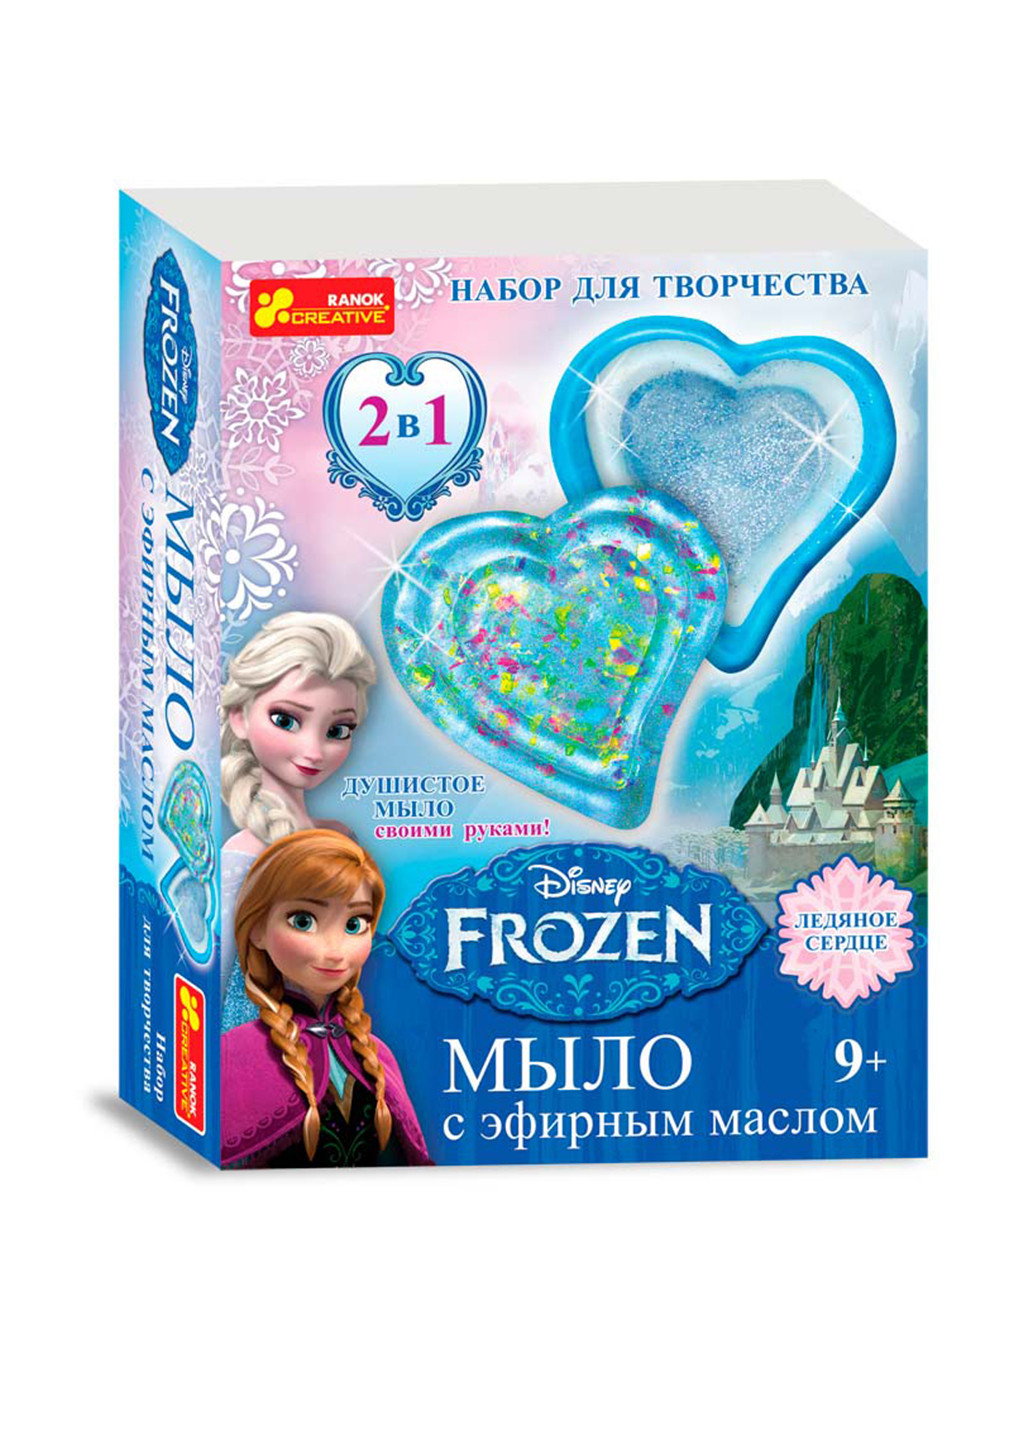 Набор для мыловарения Disney Frozen, 17×22×5 см Ranok Creative (144782545)